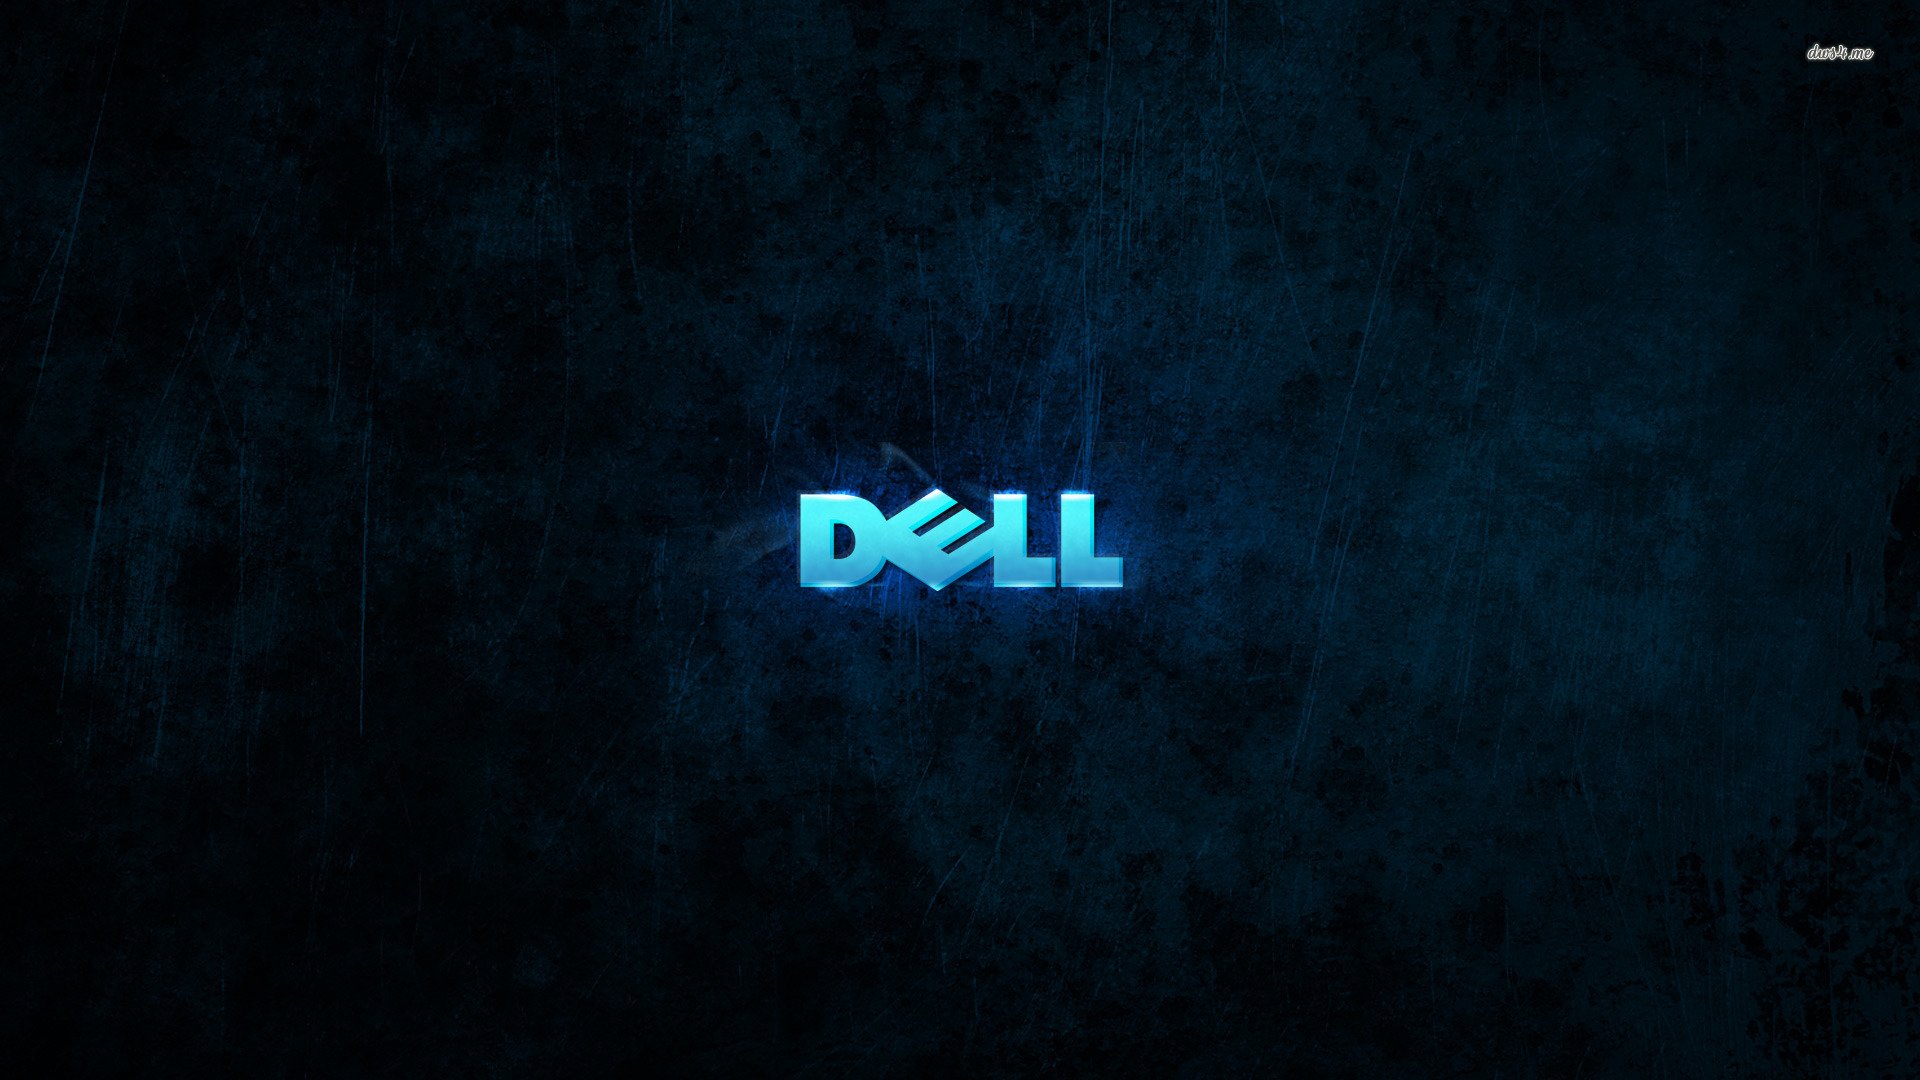 Great Dell Wallpaper 4K